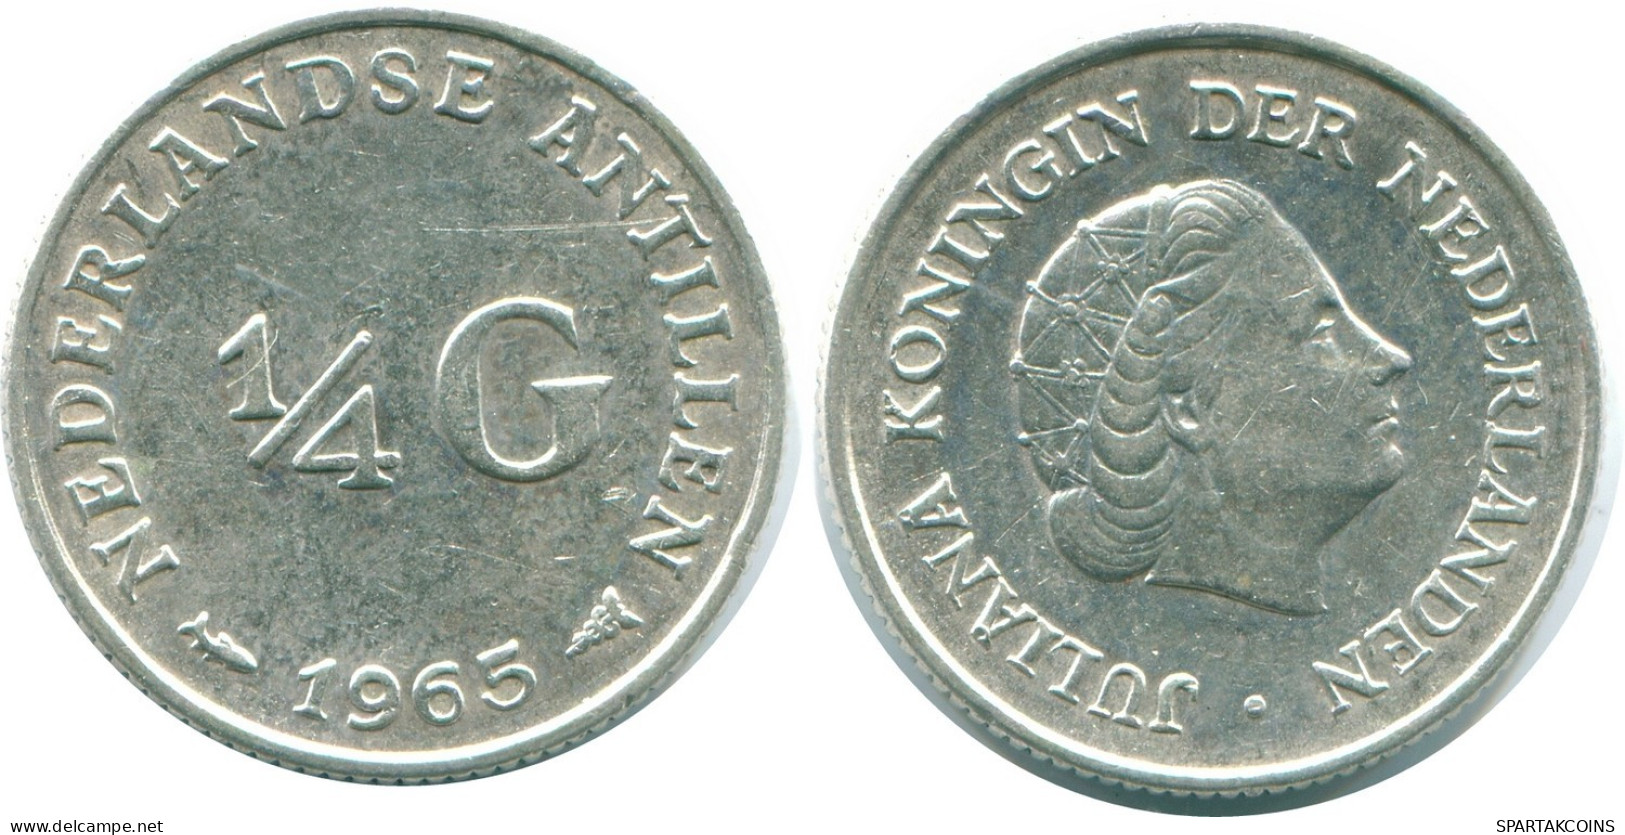 1/4 GULDEN 1965 NIEDERLÄNDISCHE ANTILLEN SILBER Koloniale Münze #NL11285.4.D.A - Antilles Néerlandaises